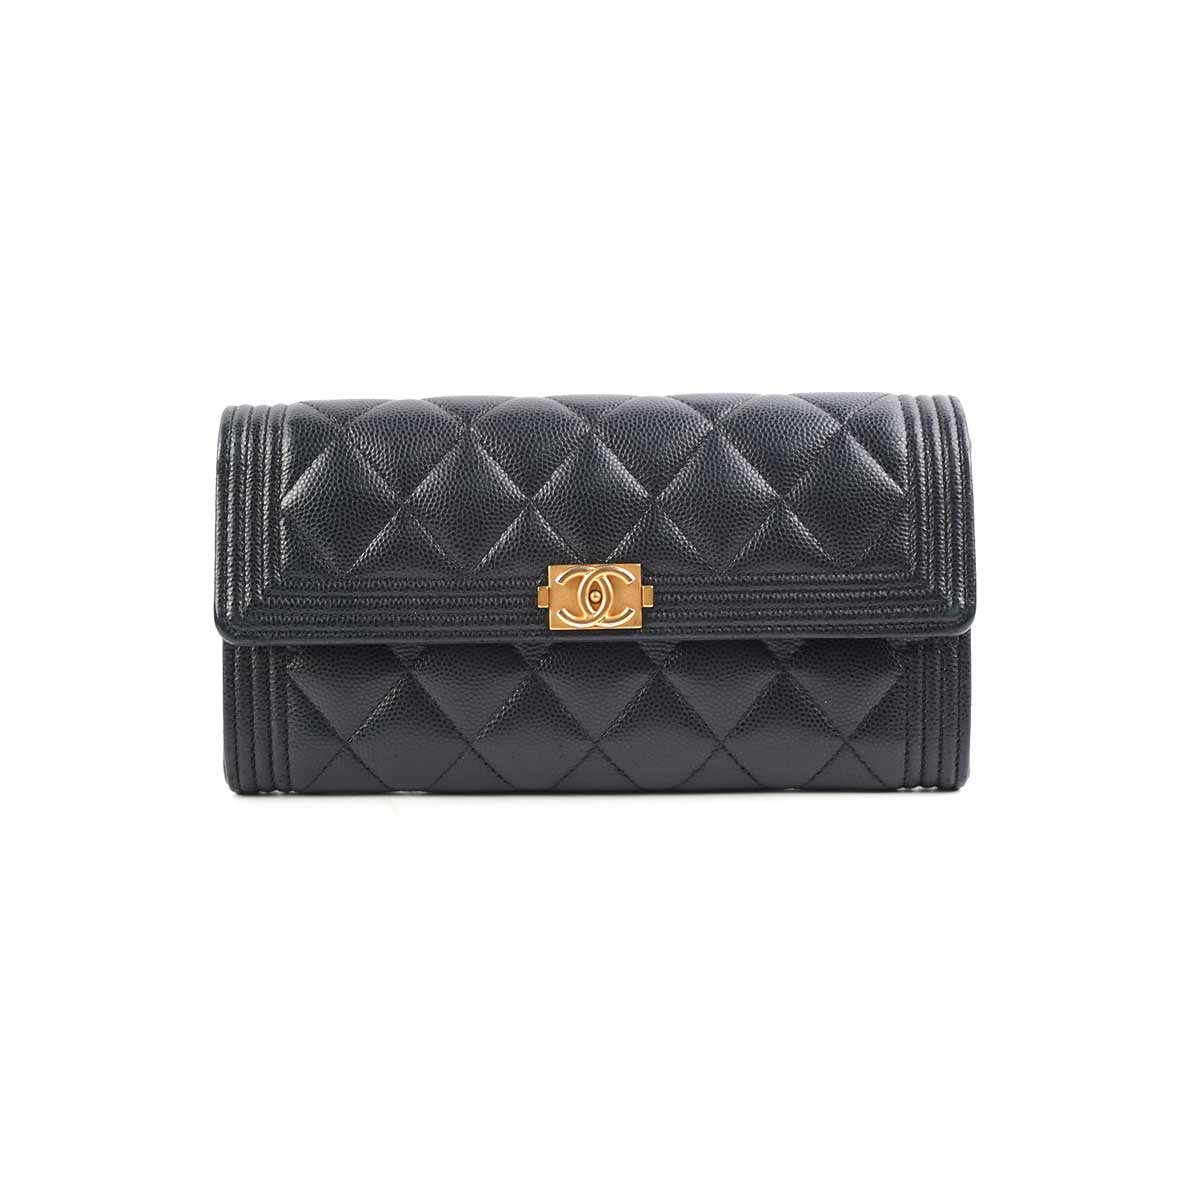 Chanel long wallet black 